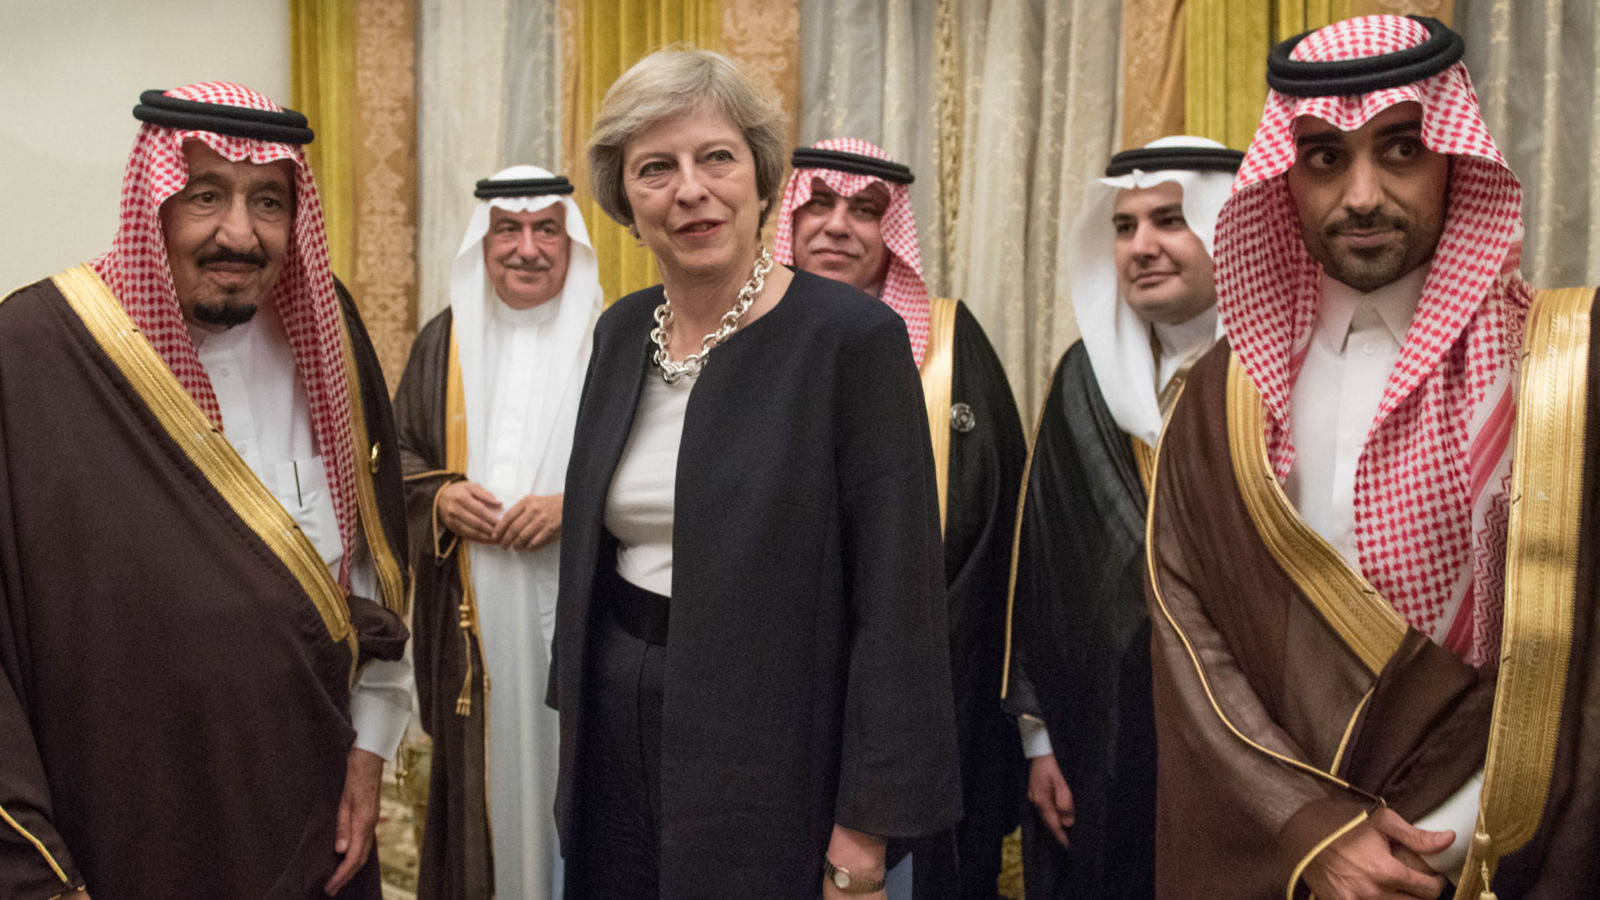 Saudi Regime Funding Terrorism, Extremism in Britain: Report